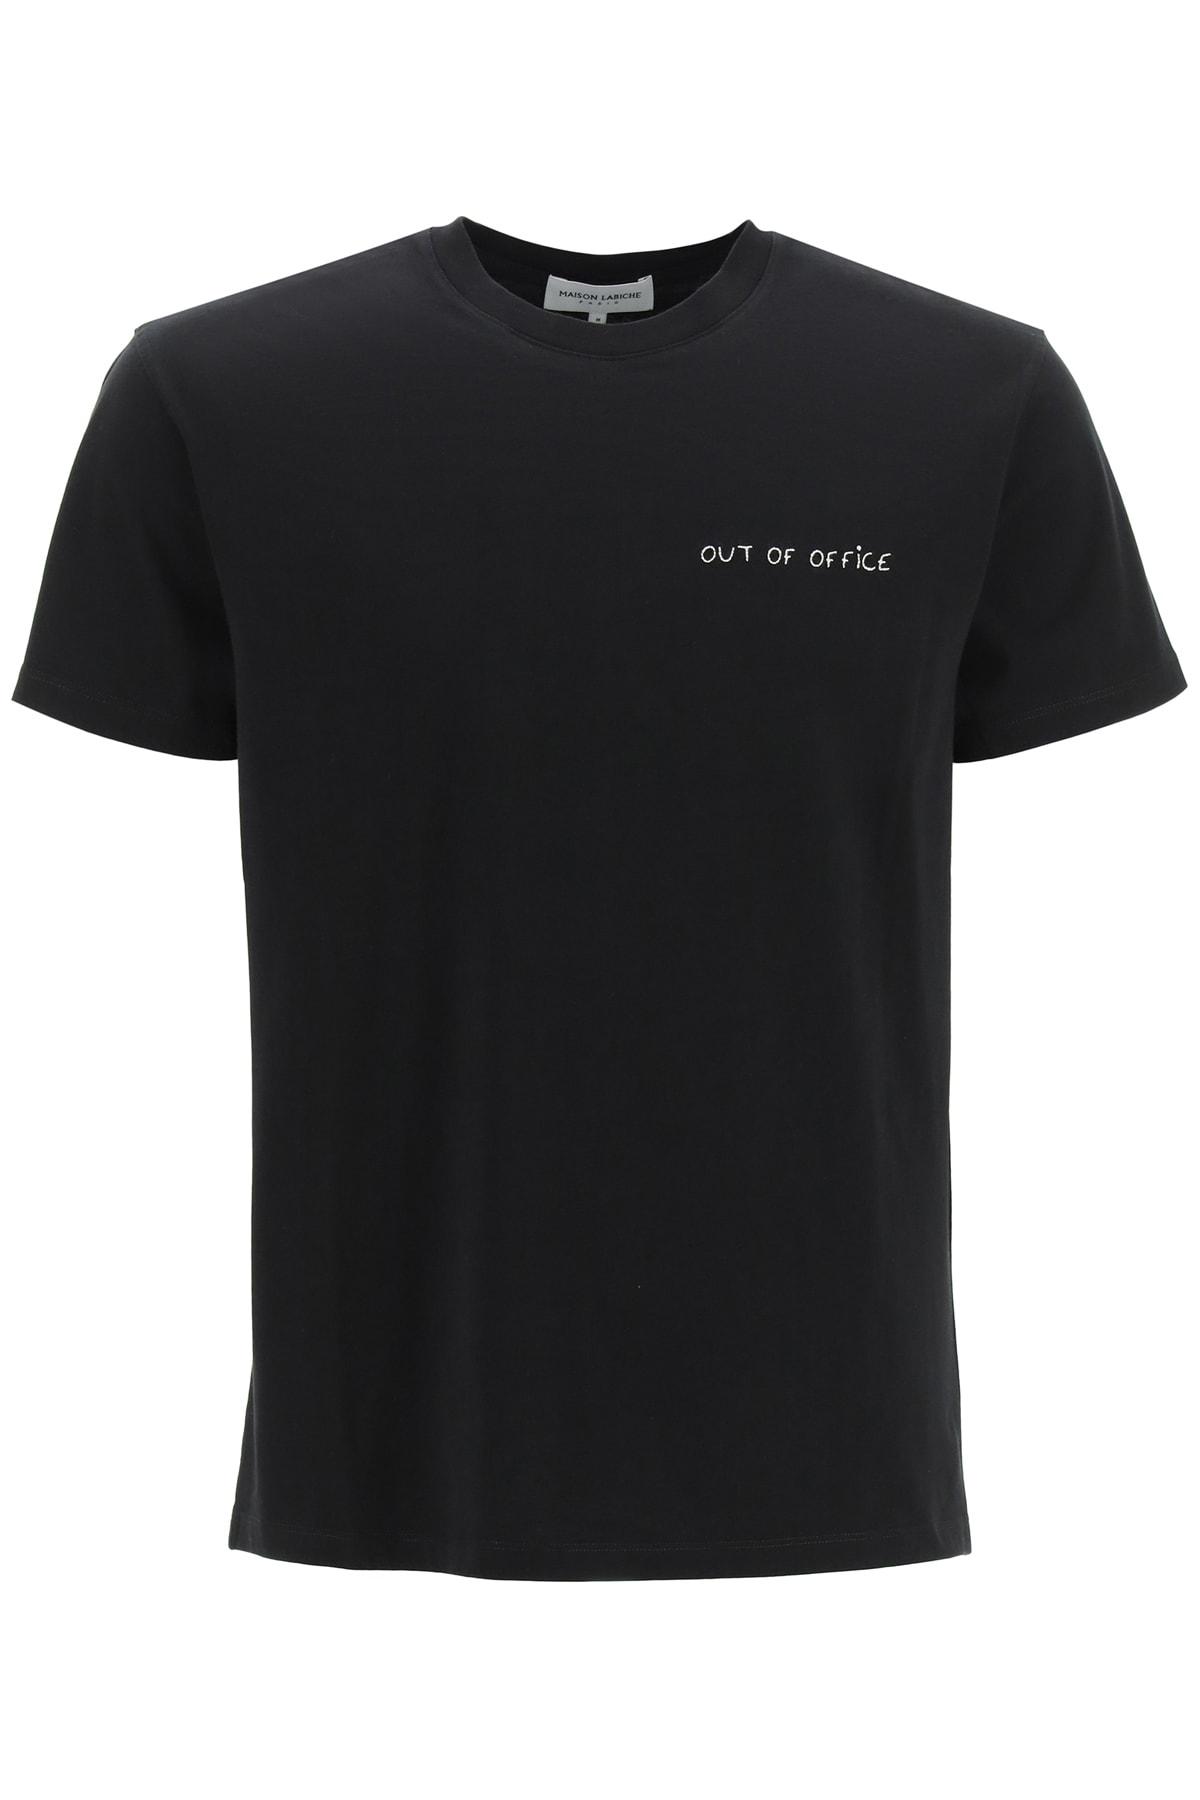 Maison Labiche Cotton The Popin Court T-shirt in Black (Black) (Black) for  Men | Lyst